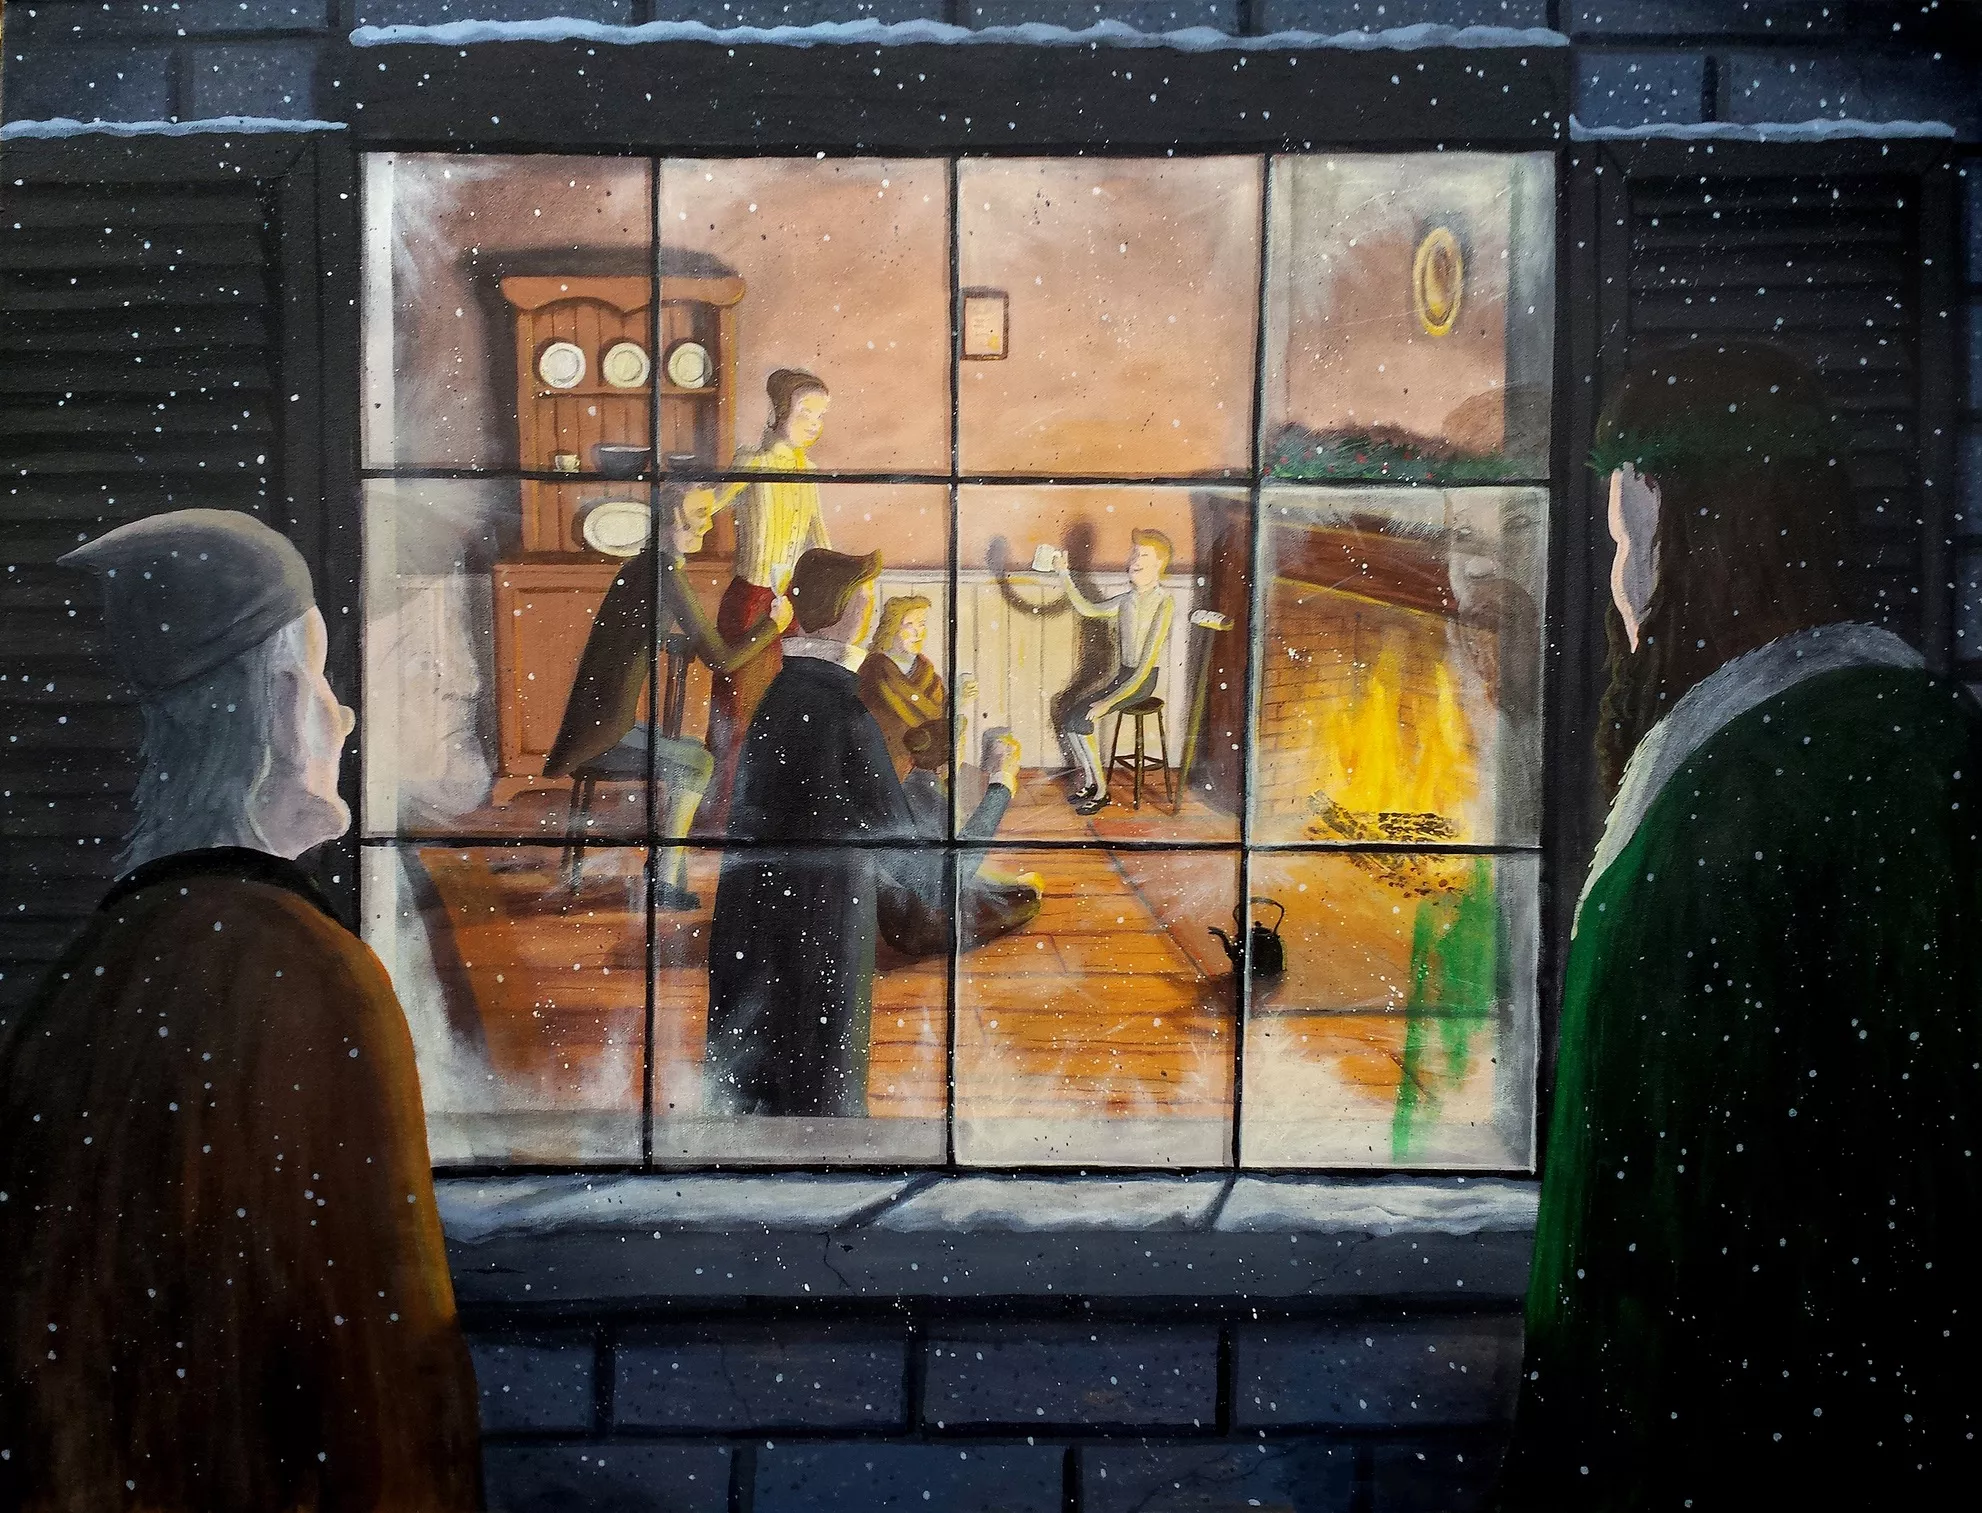 L'espectre del Nadal present mostra a Scrooge la família del seu empleat Bob Cratchit celebrant les festes